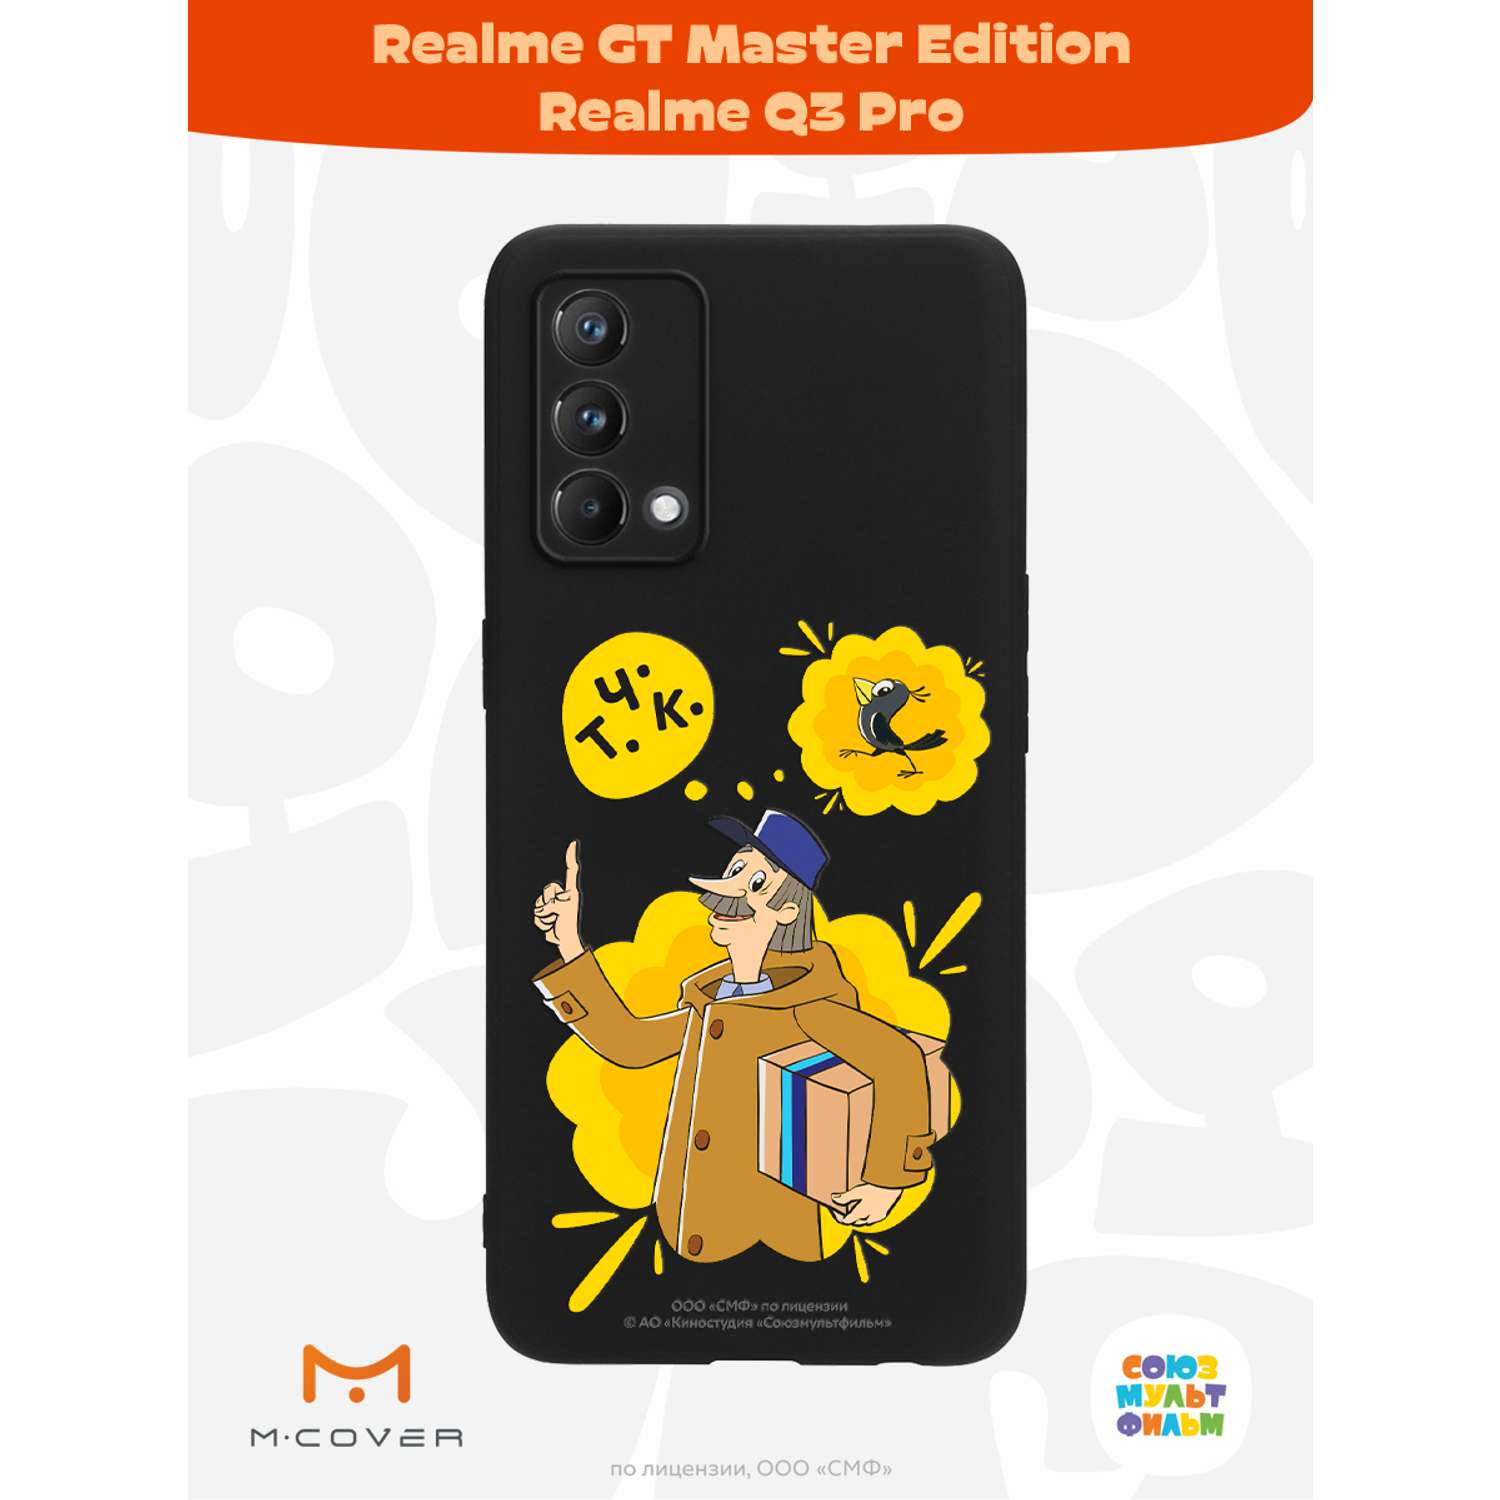 Силиконовый чехол Mcover для смартфона Realme GT Master Edition Q3 Pro Союзмультфильм Говорящая посылка - фото 2